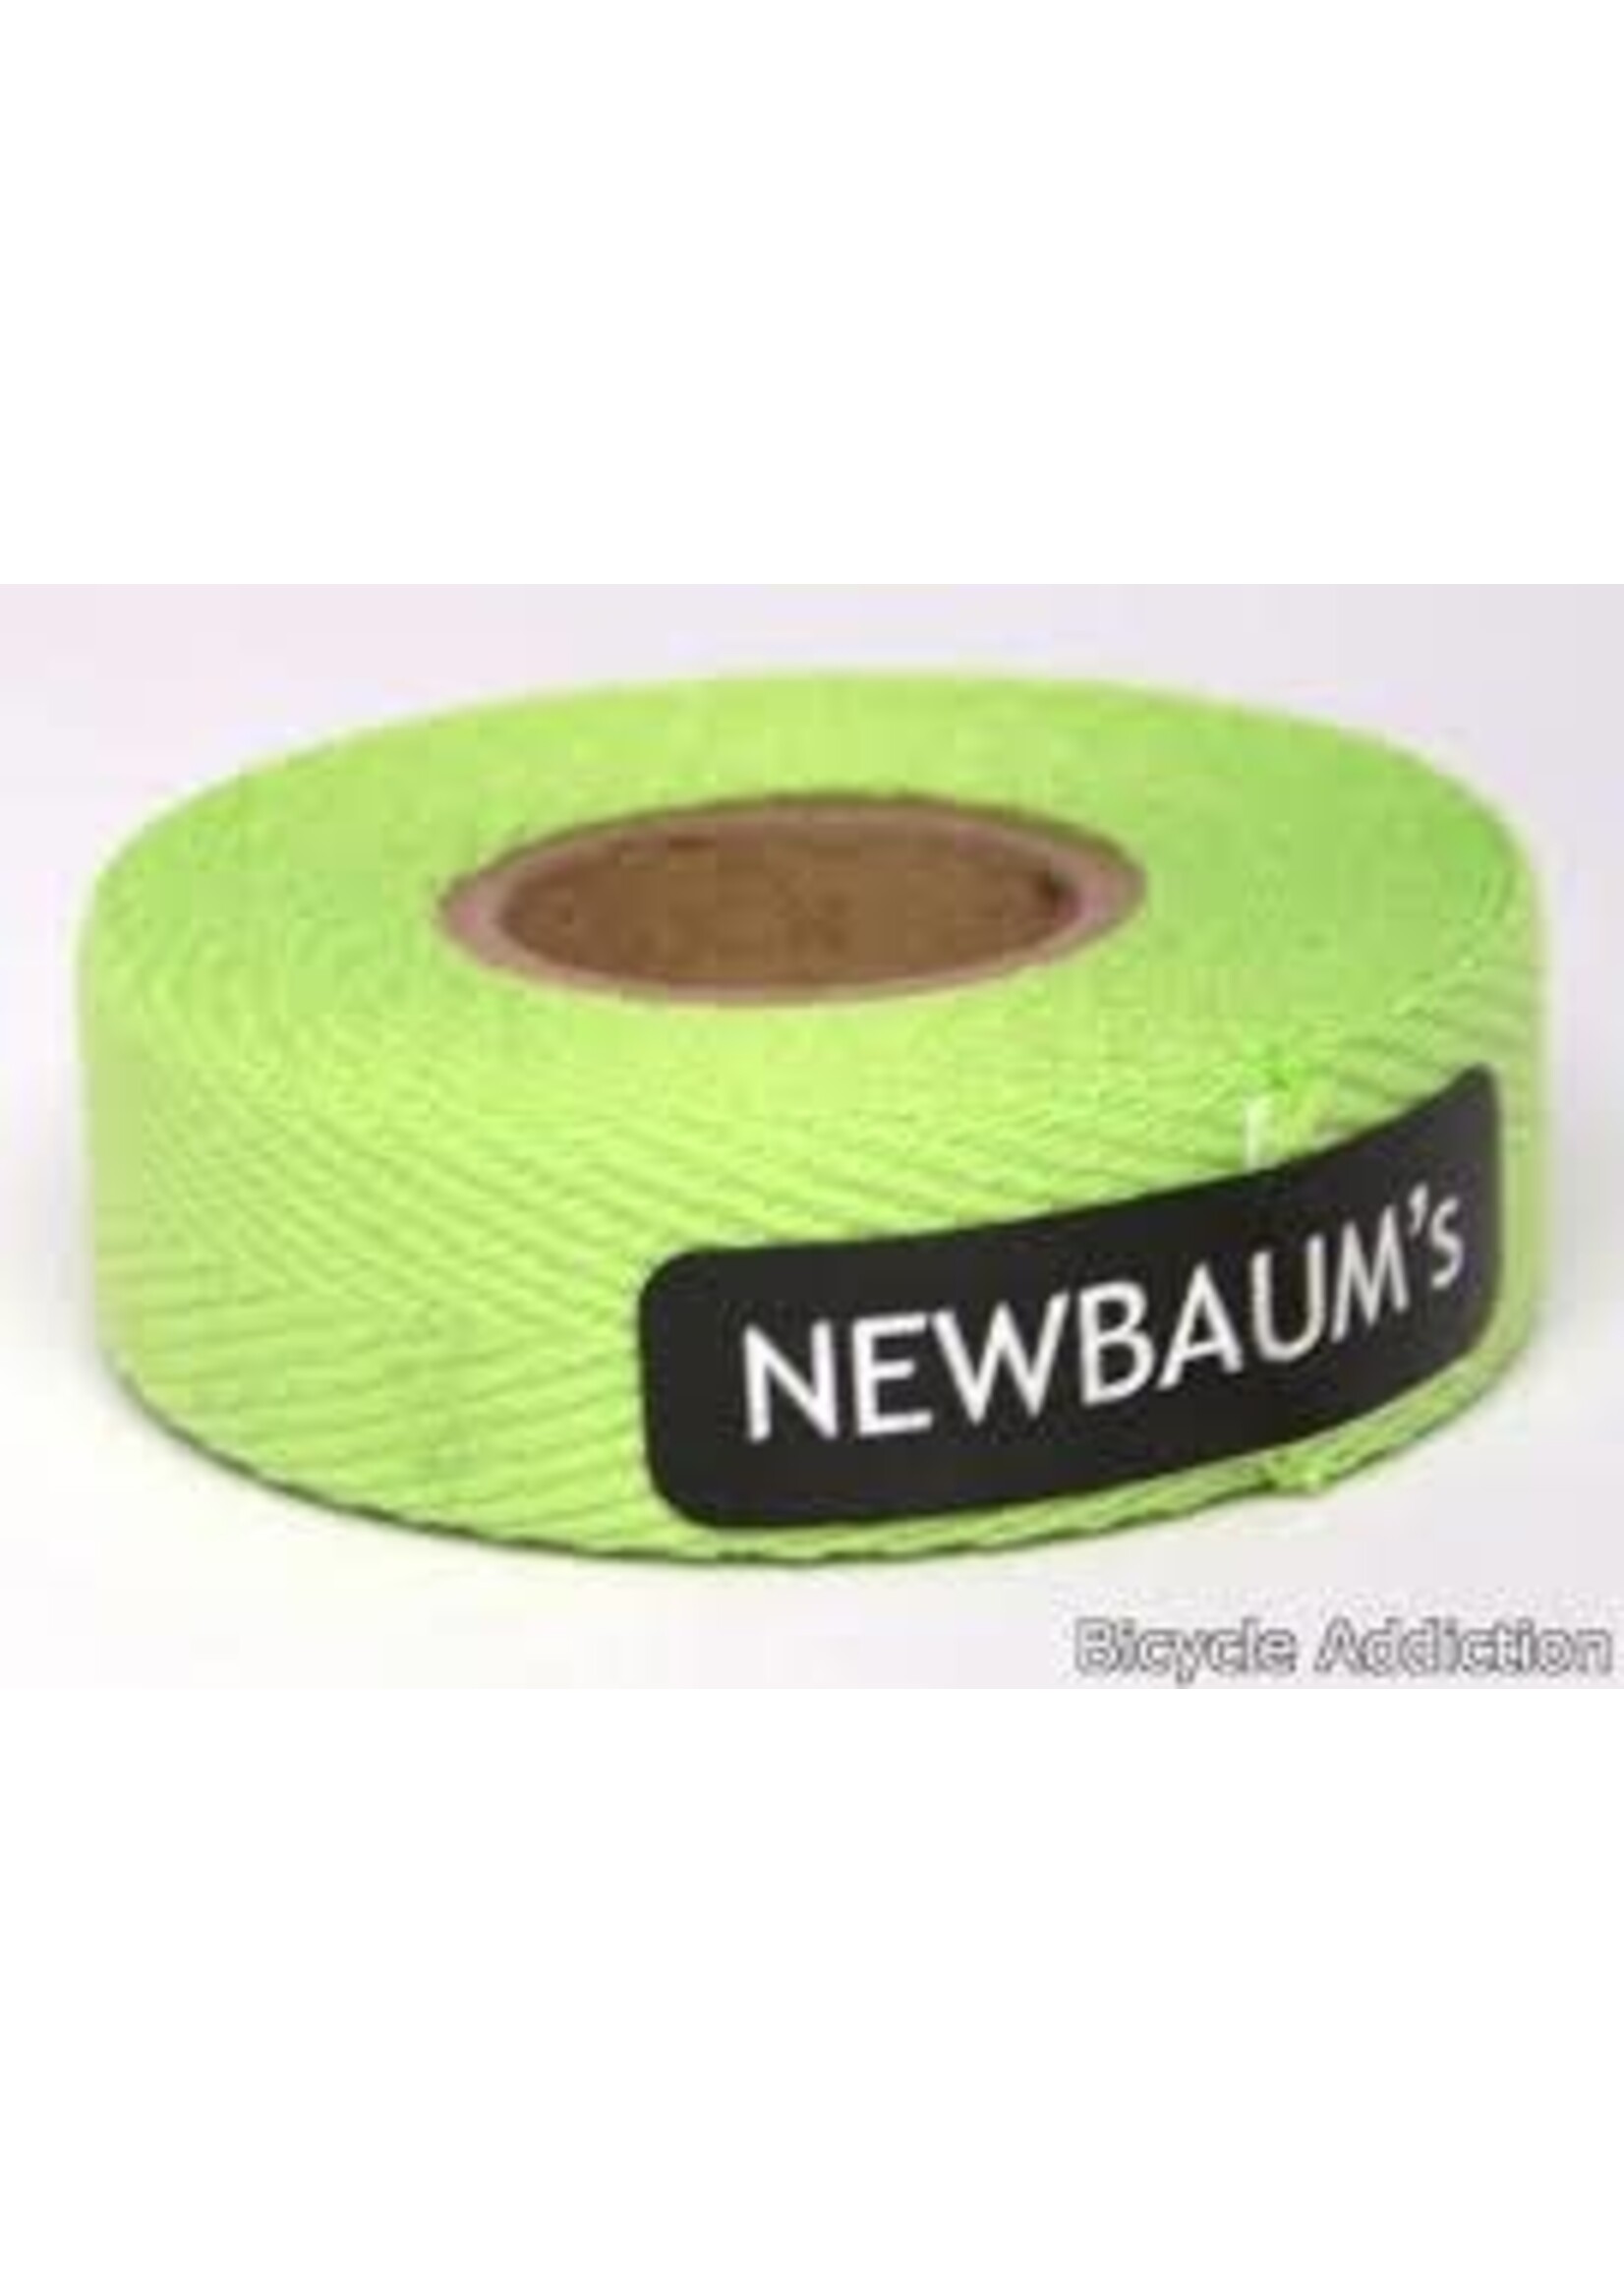 Newbaum's NEWBAUM'S Nastro Per Maniglie Colore Verdino